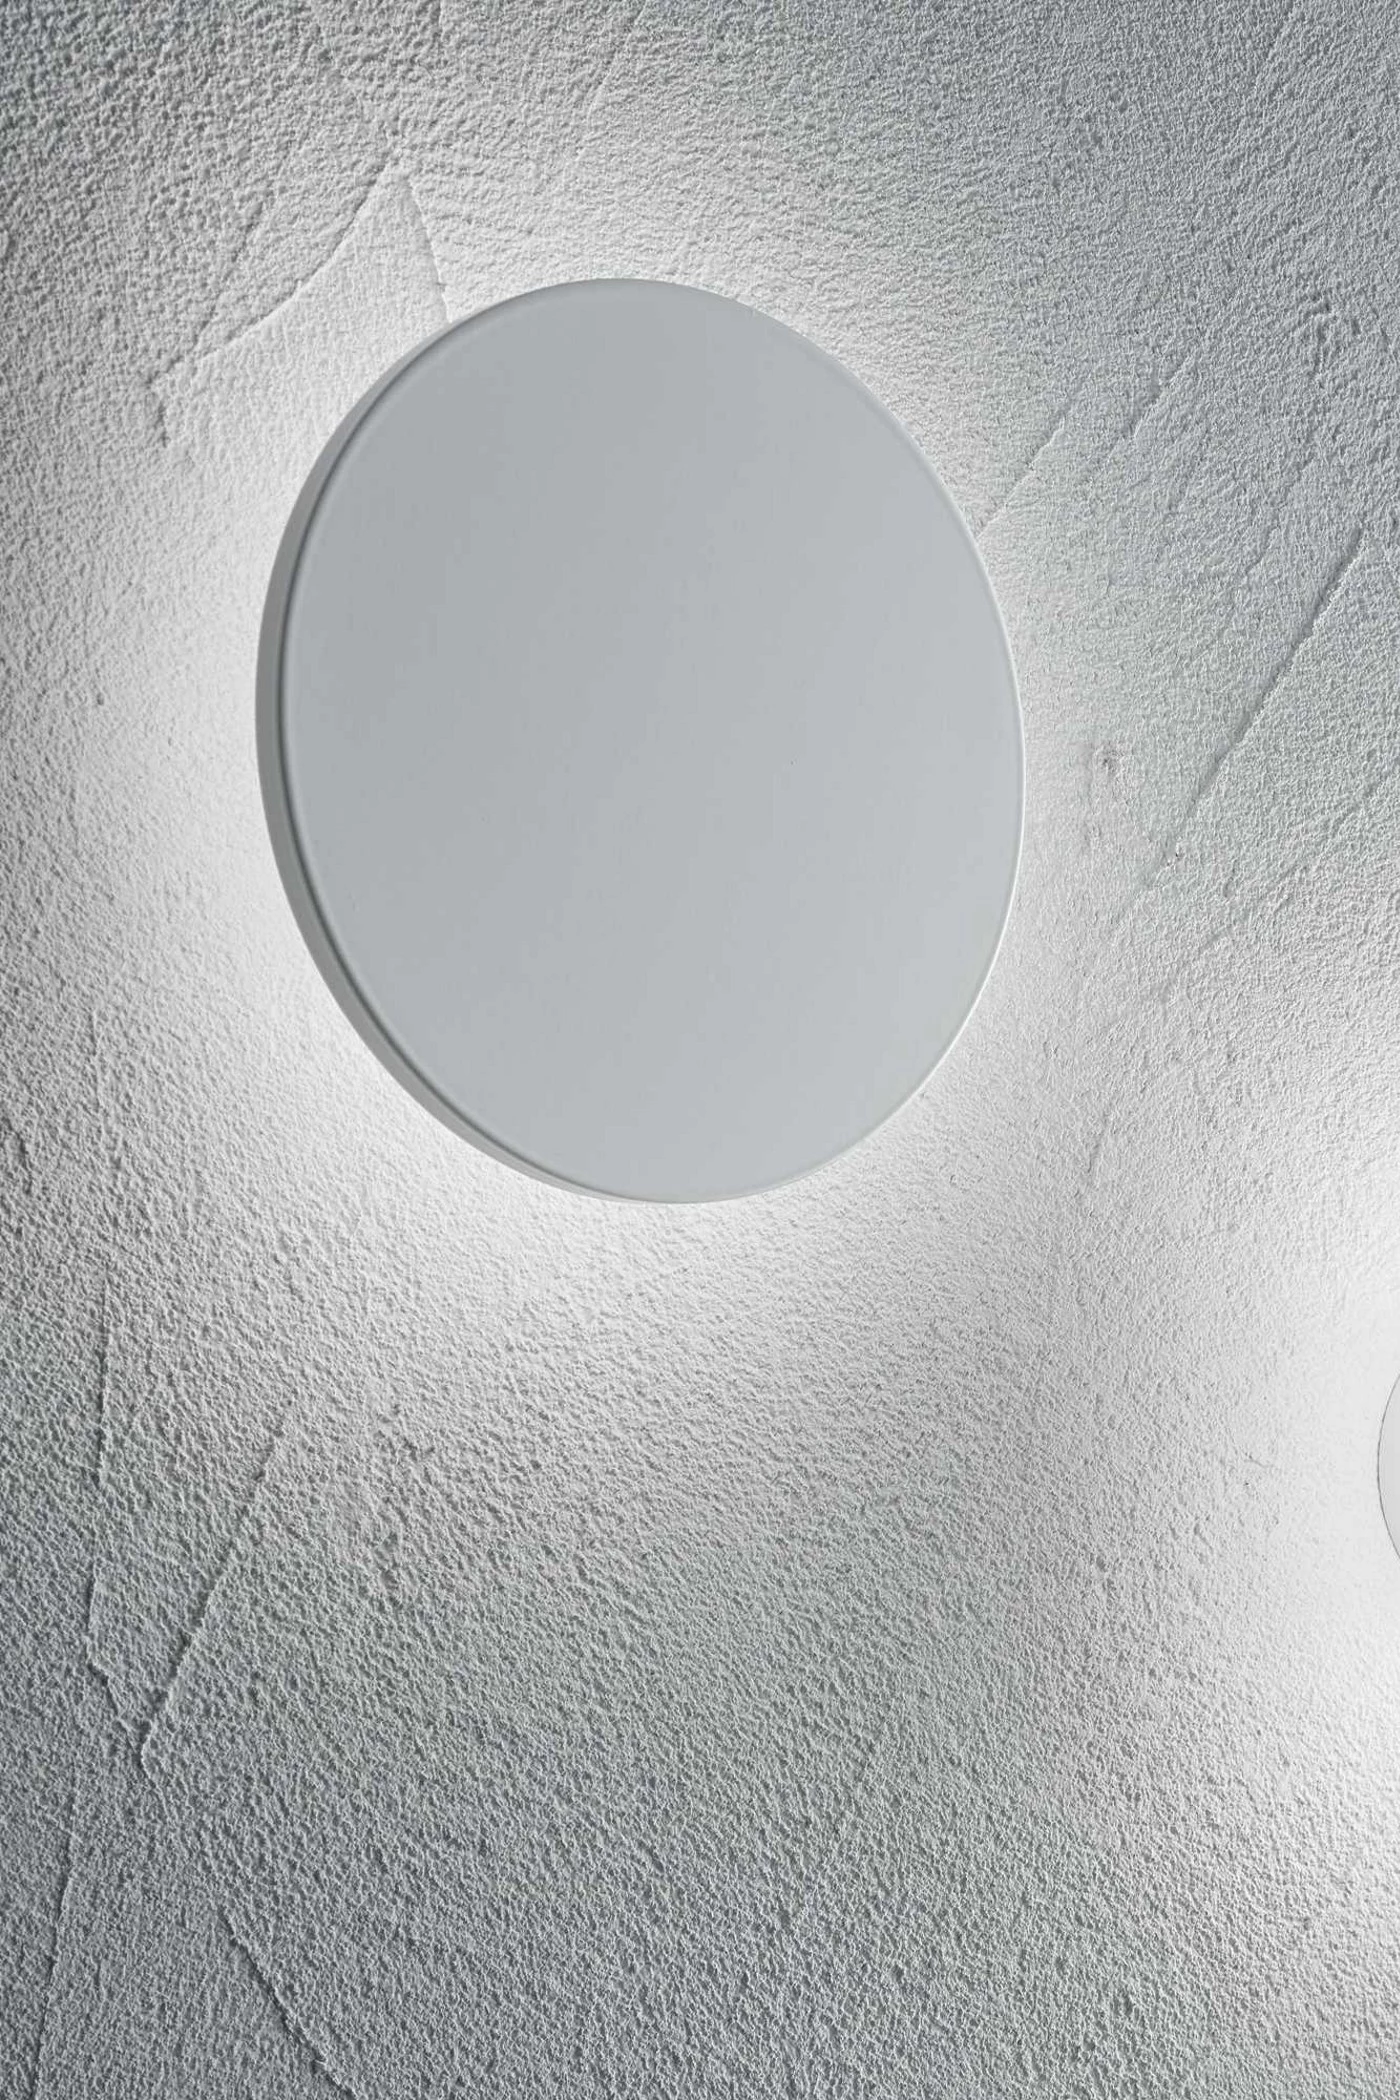   
                        Светильник настенный IDEAL LUX  (Италия) 23006    
                         в стиле Скандинавский.  
                        Тип источника света: встроенный led-модуль, несъемный.                         Форма: Круг.                                                                          фото 2